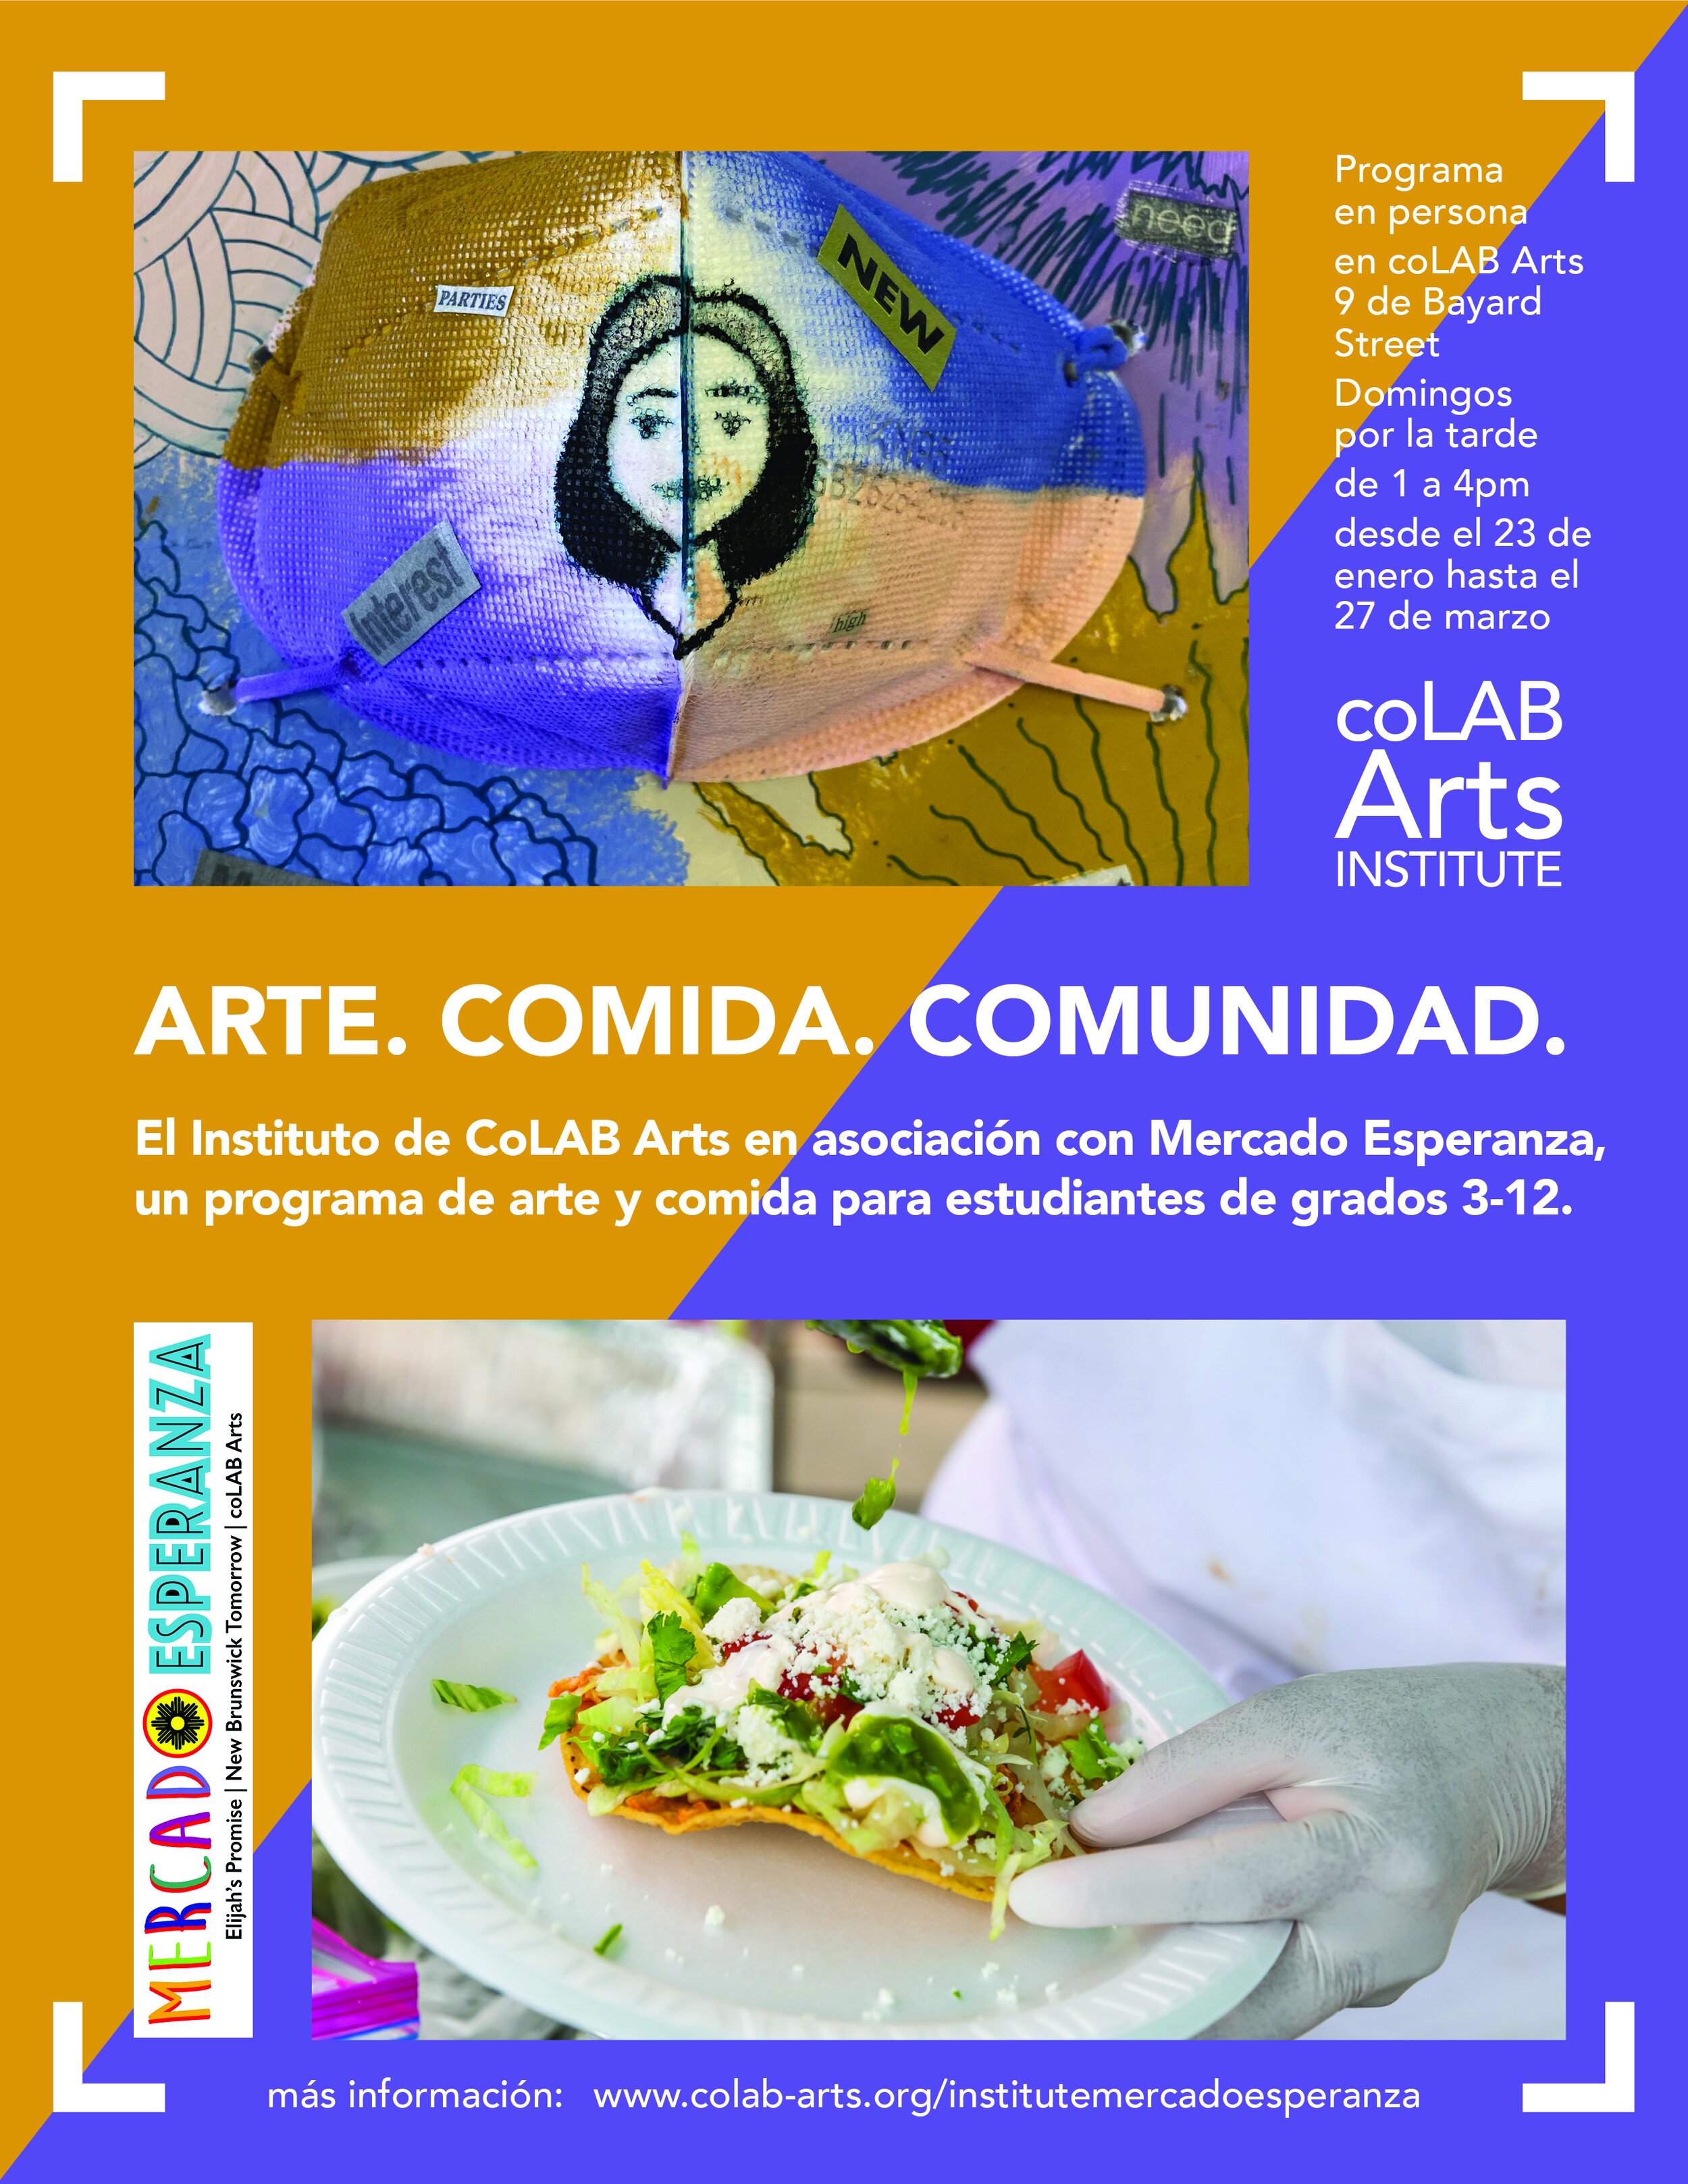 coLAB_Institute_ArtFoodCommunity_Flyer_Spanish_2021.jpg